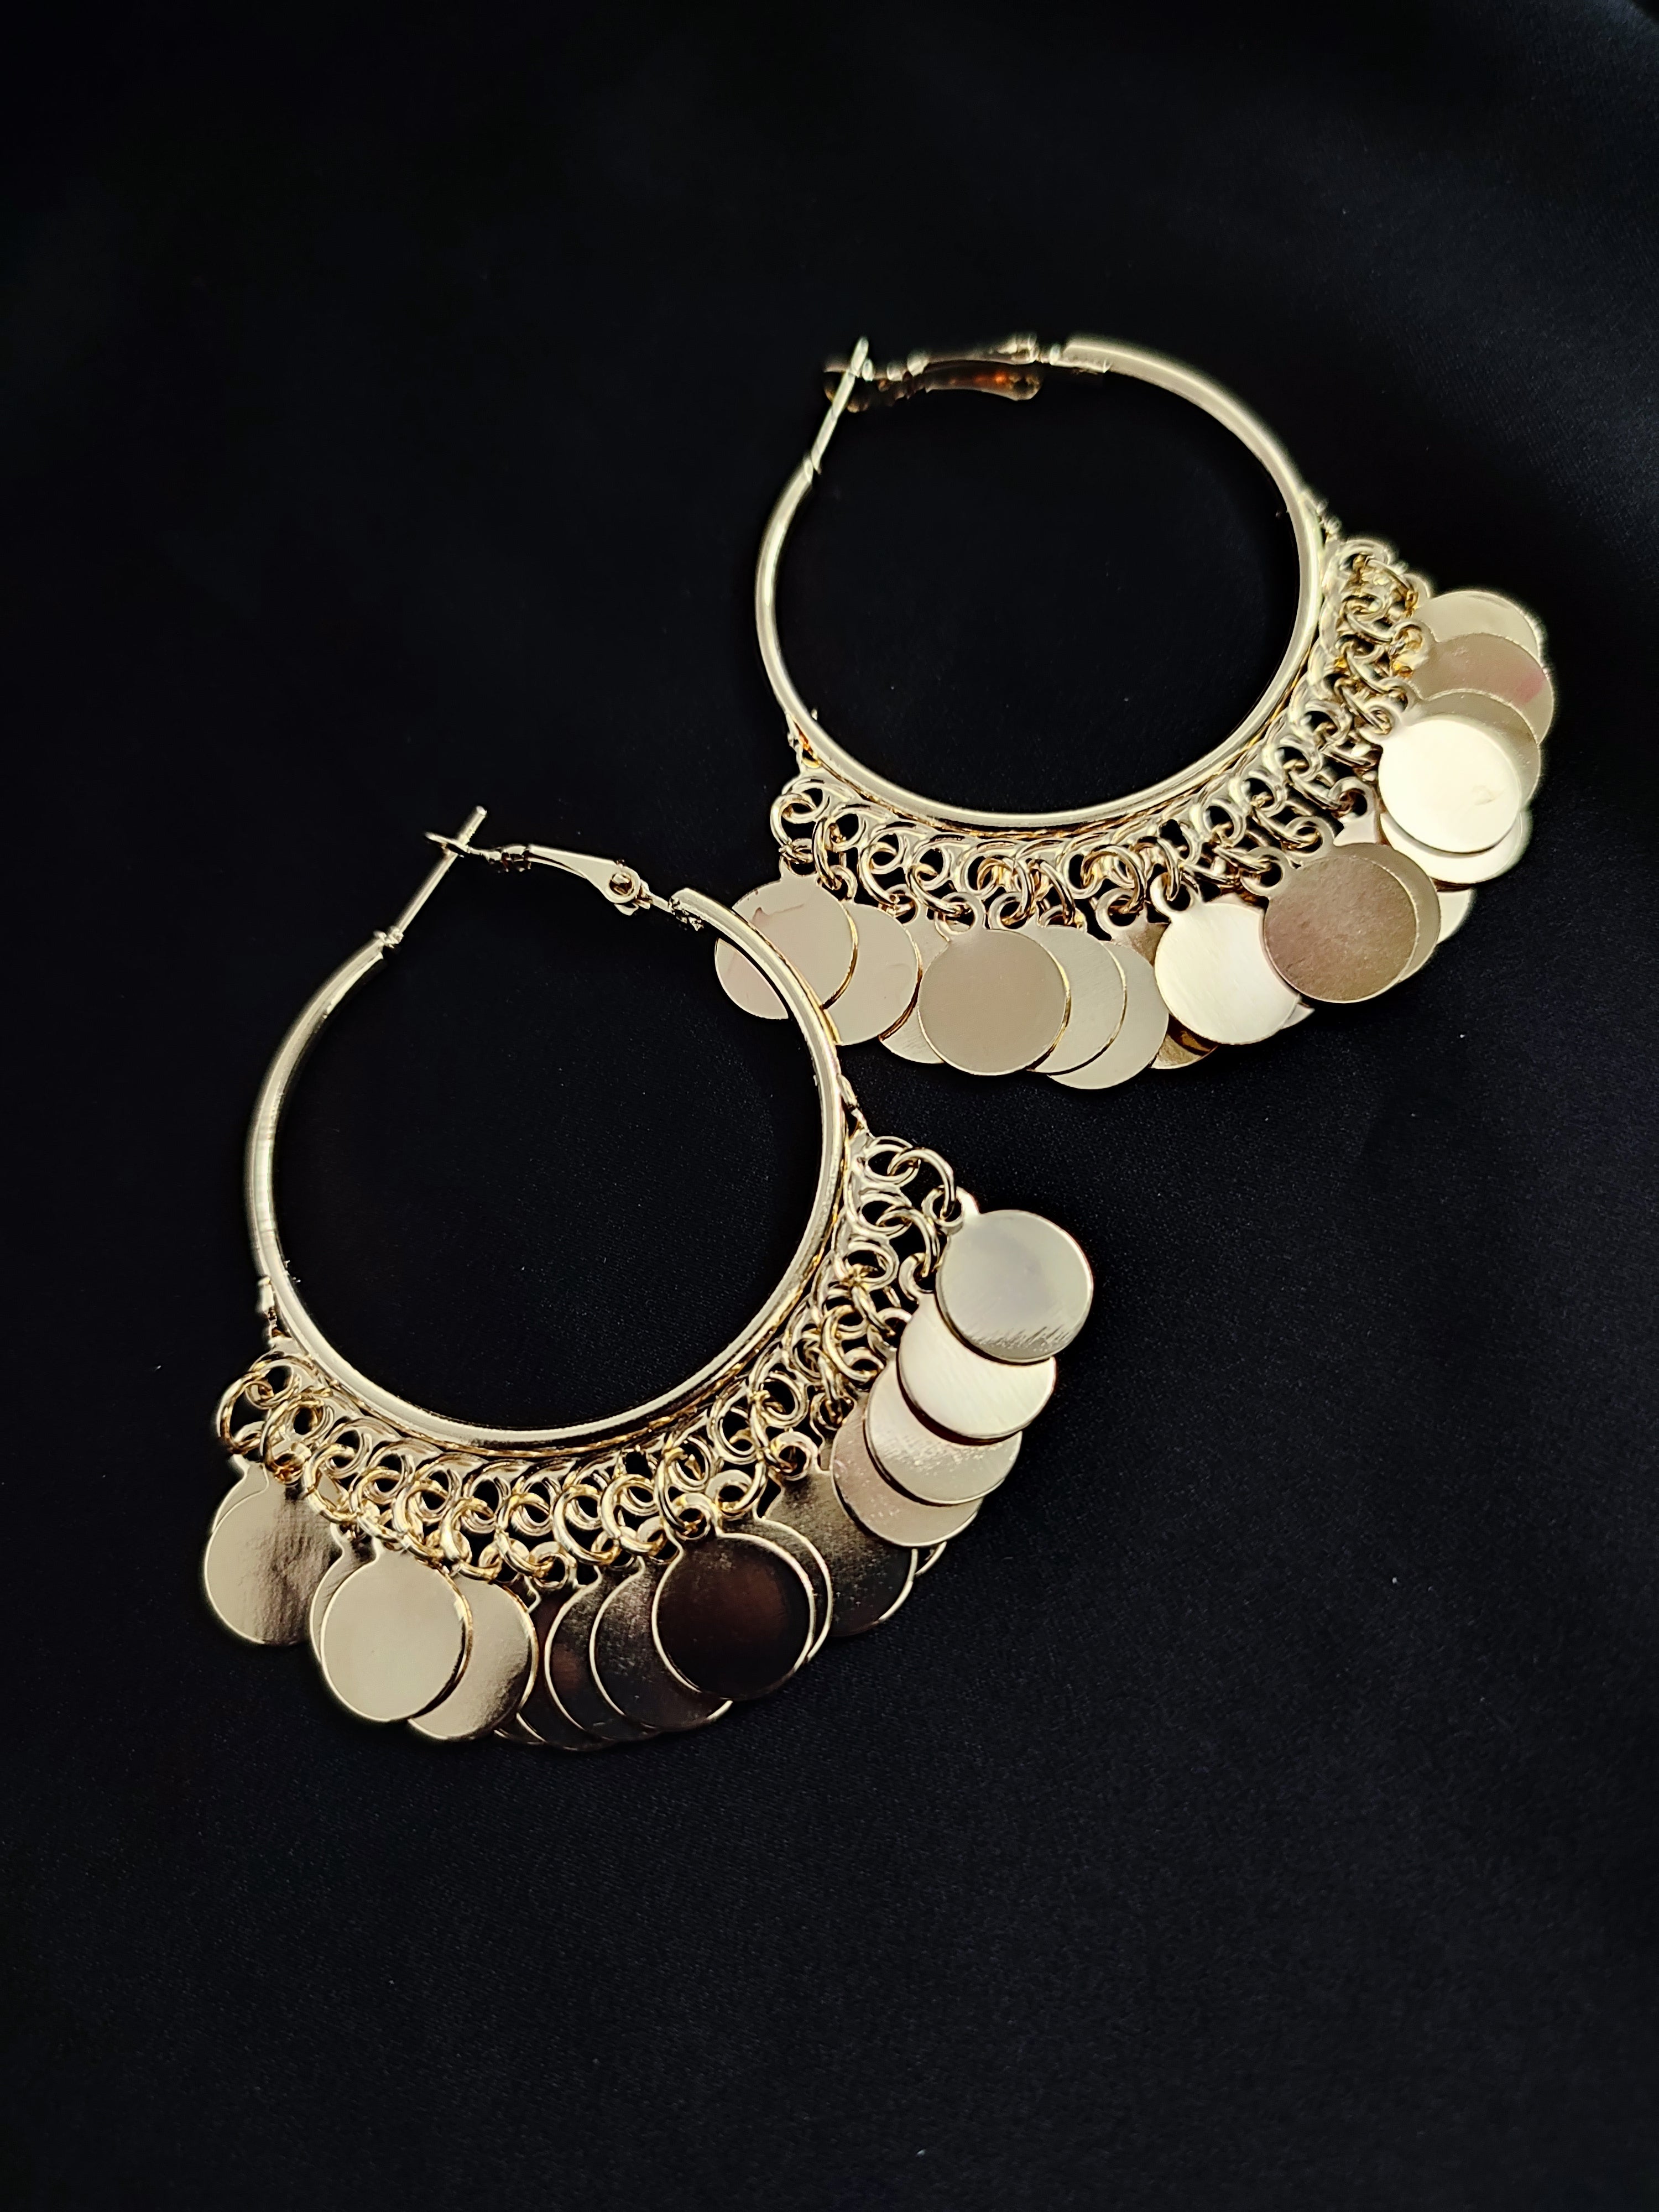 Golden Coin Jhumka Earrings